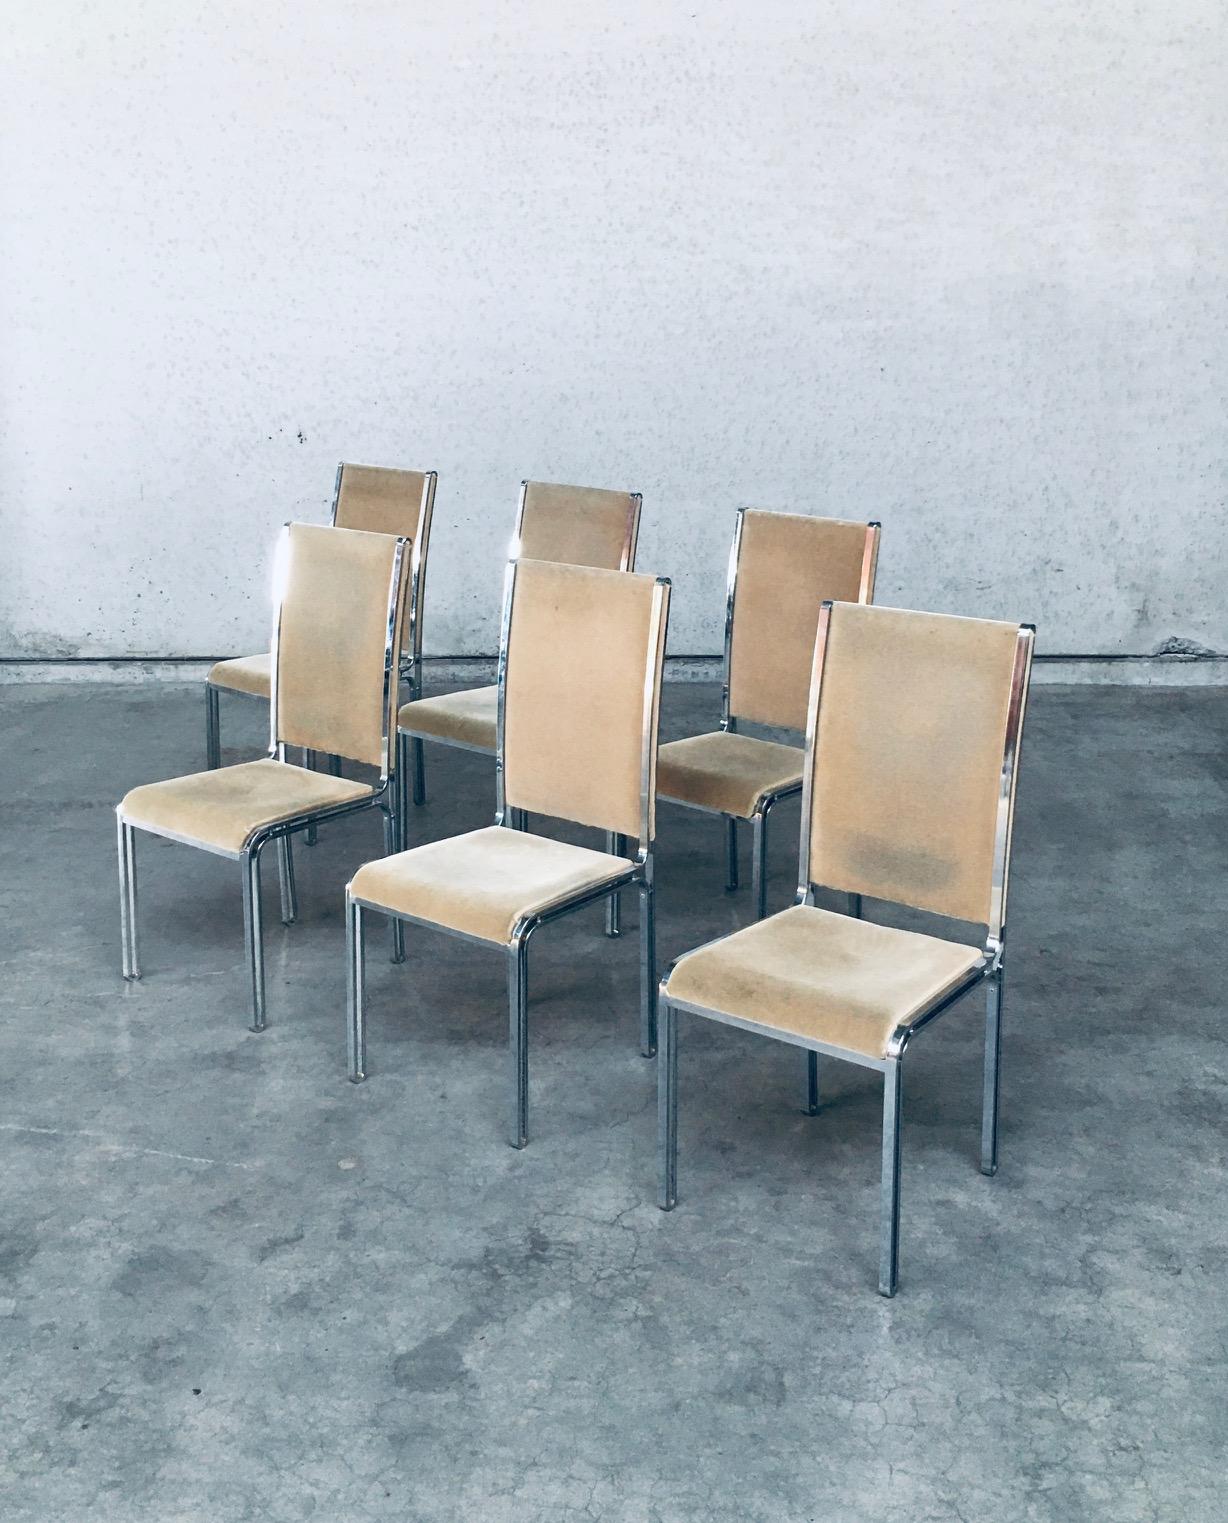 Ensemble de chaises de salle à manger Vintage Midcentury Hollywood Regency Style Design par Romeo Rega. Fabriqué en Italie, période des années 1970. Design/One à la manière de Willy Rizzo. Ensemble de 6 chaises avec base en métal chromé et